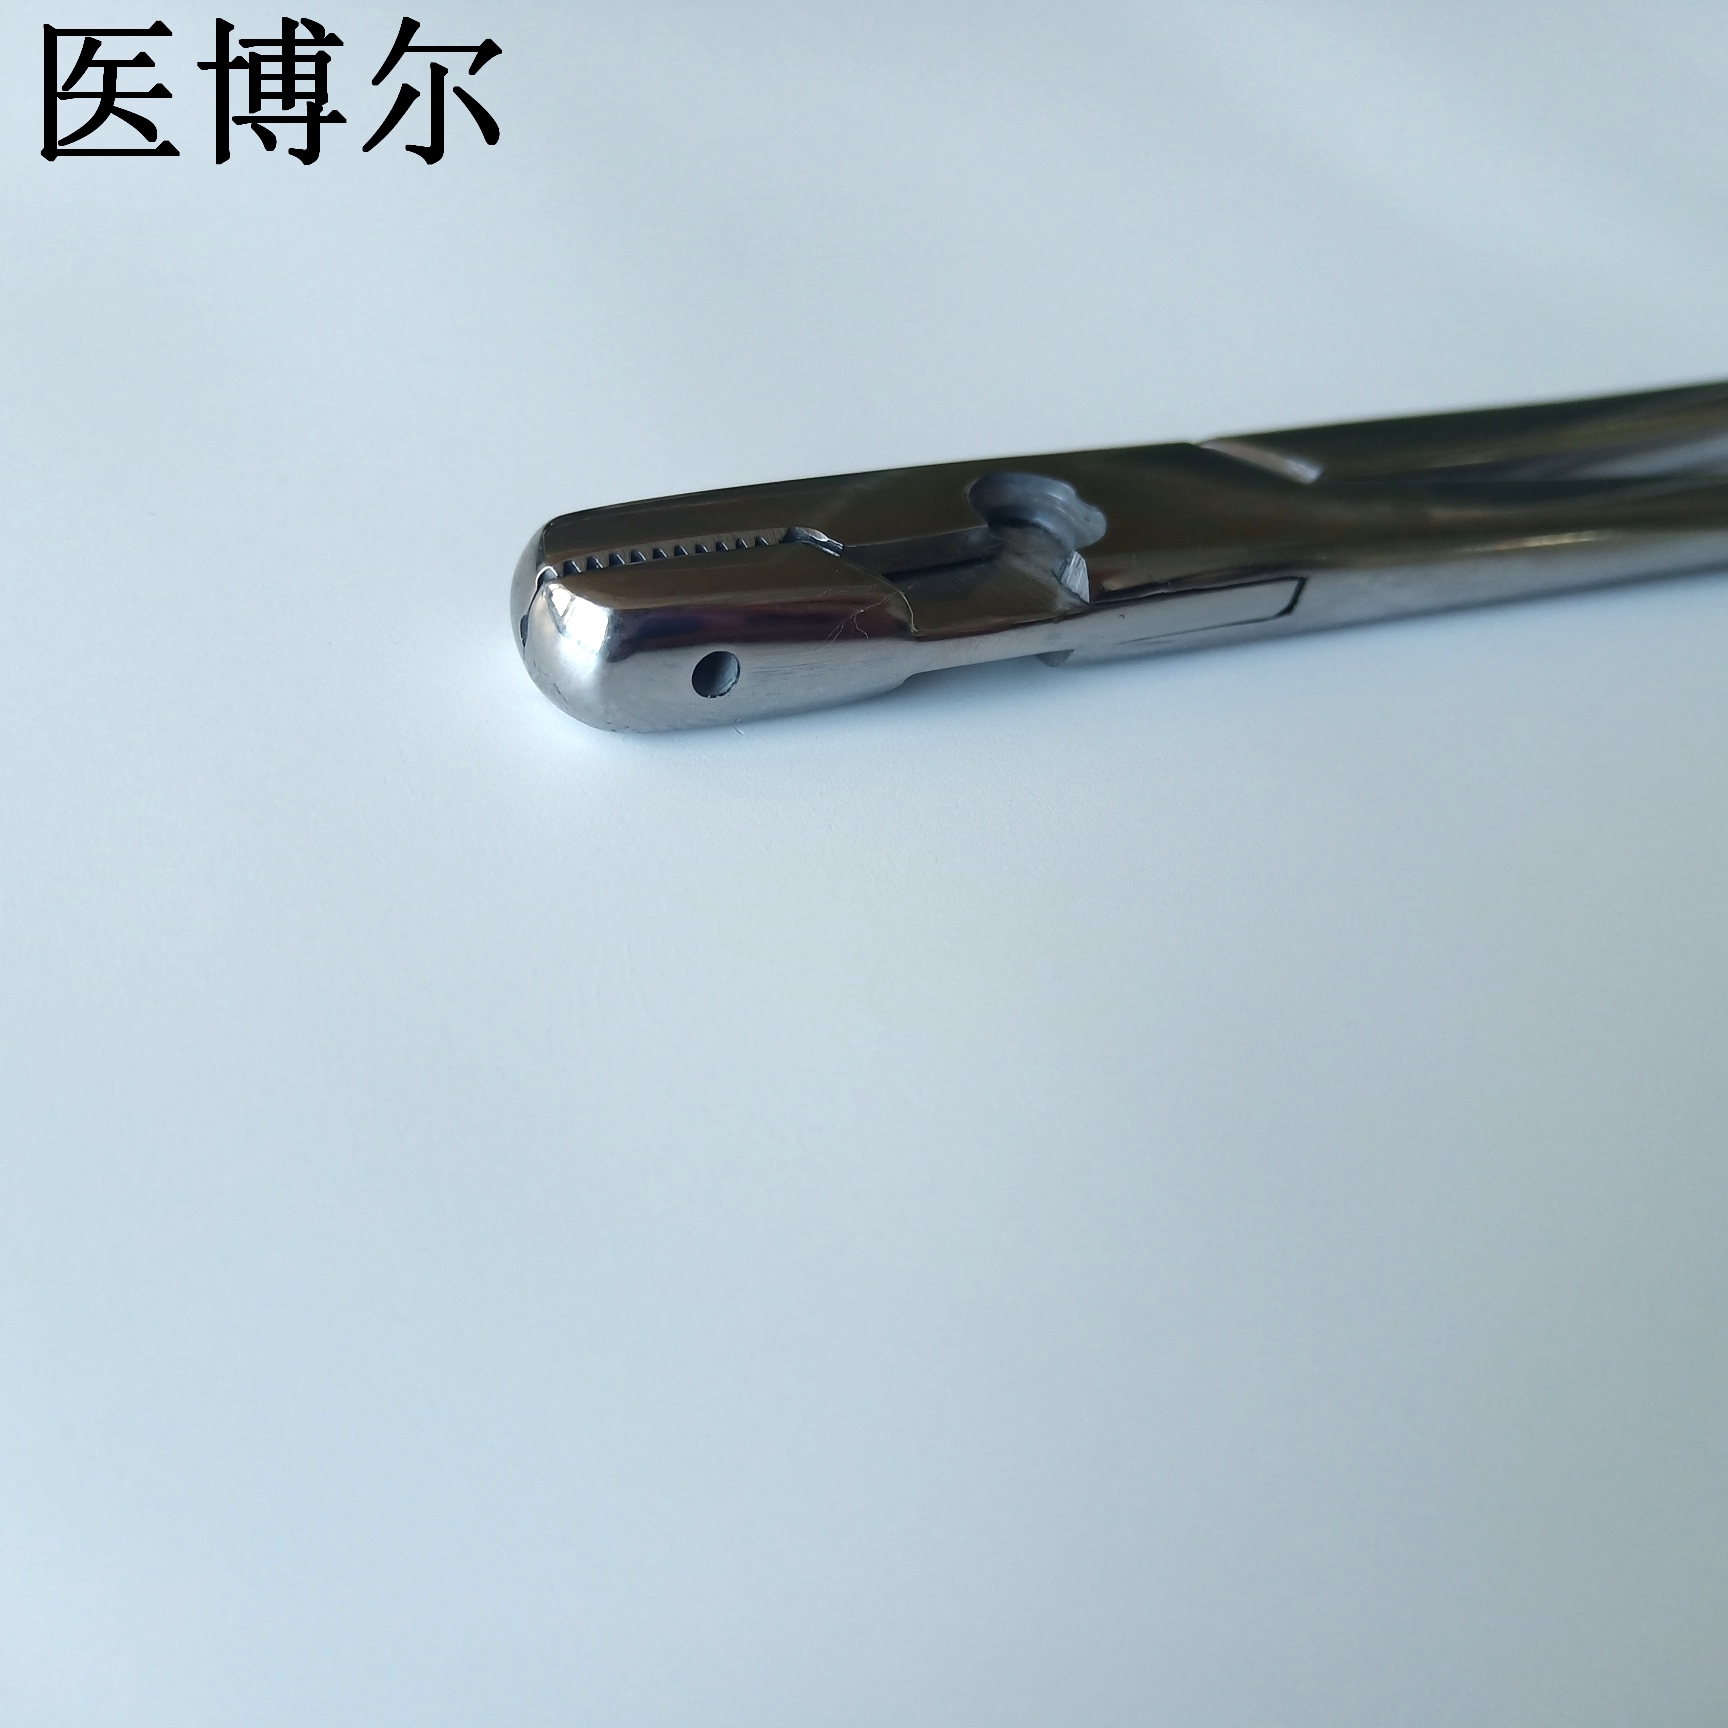 16cm钢丝钳 (5)_看图王.jpg